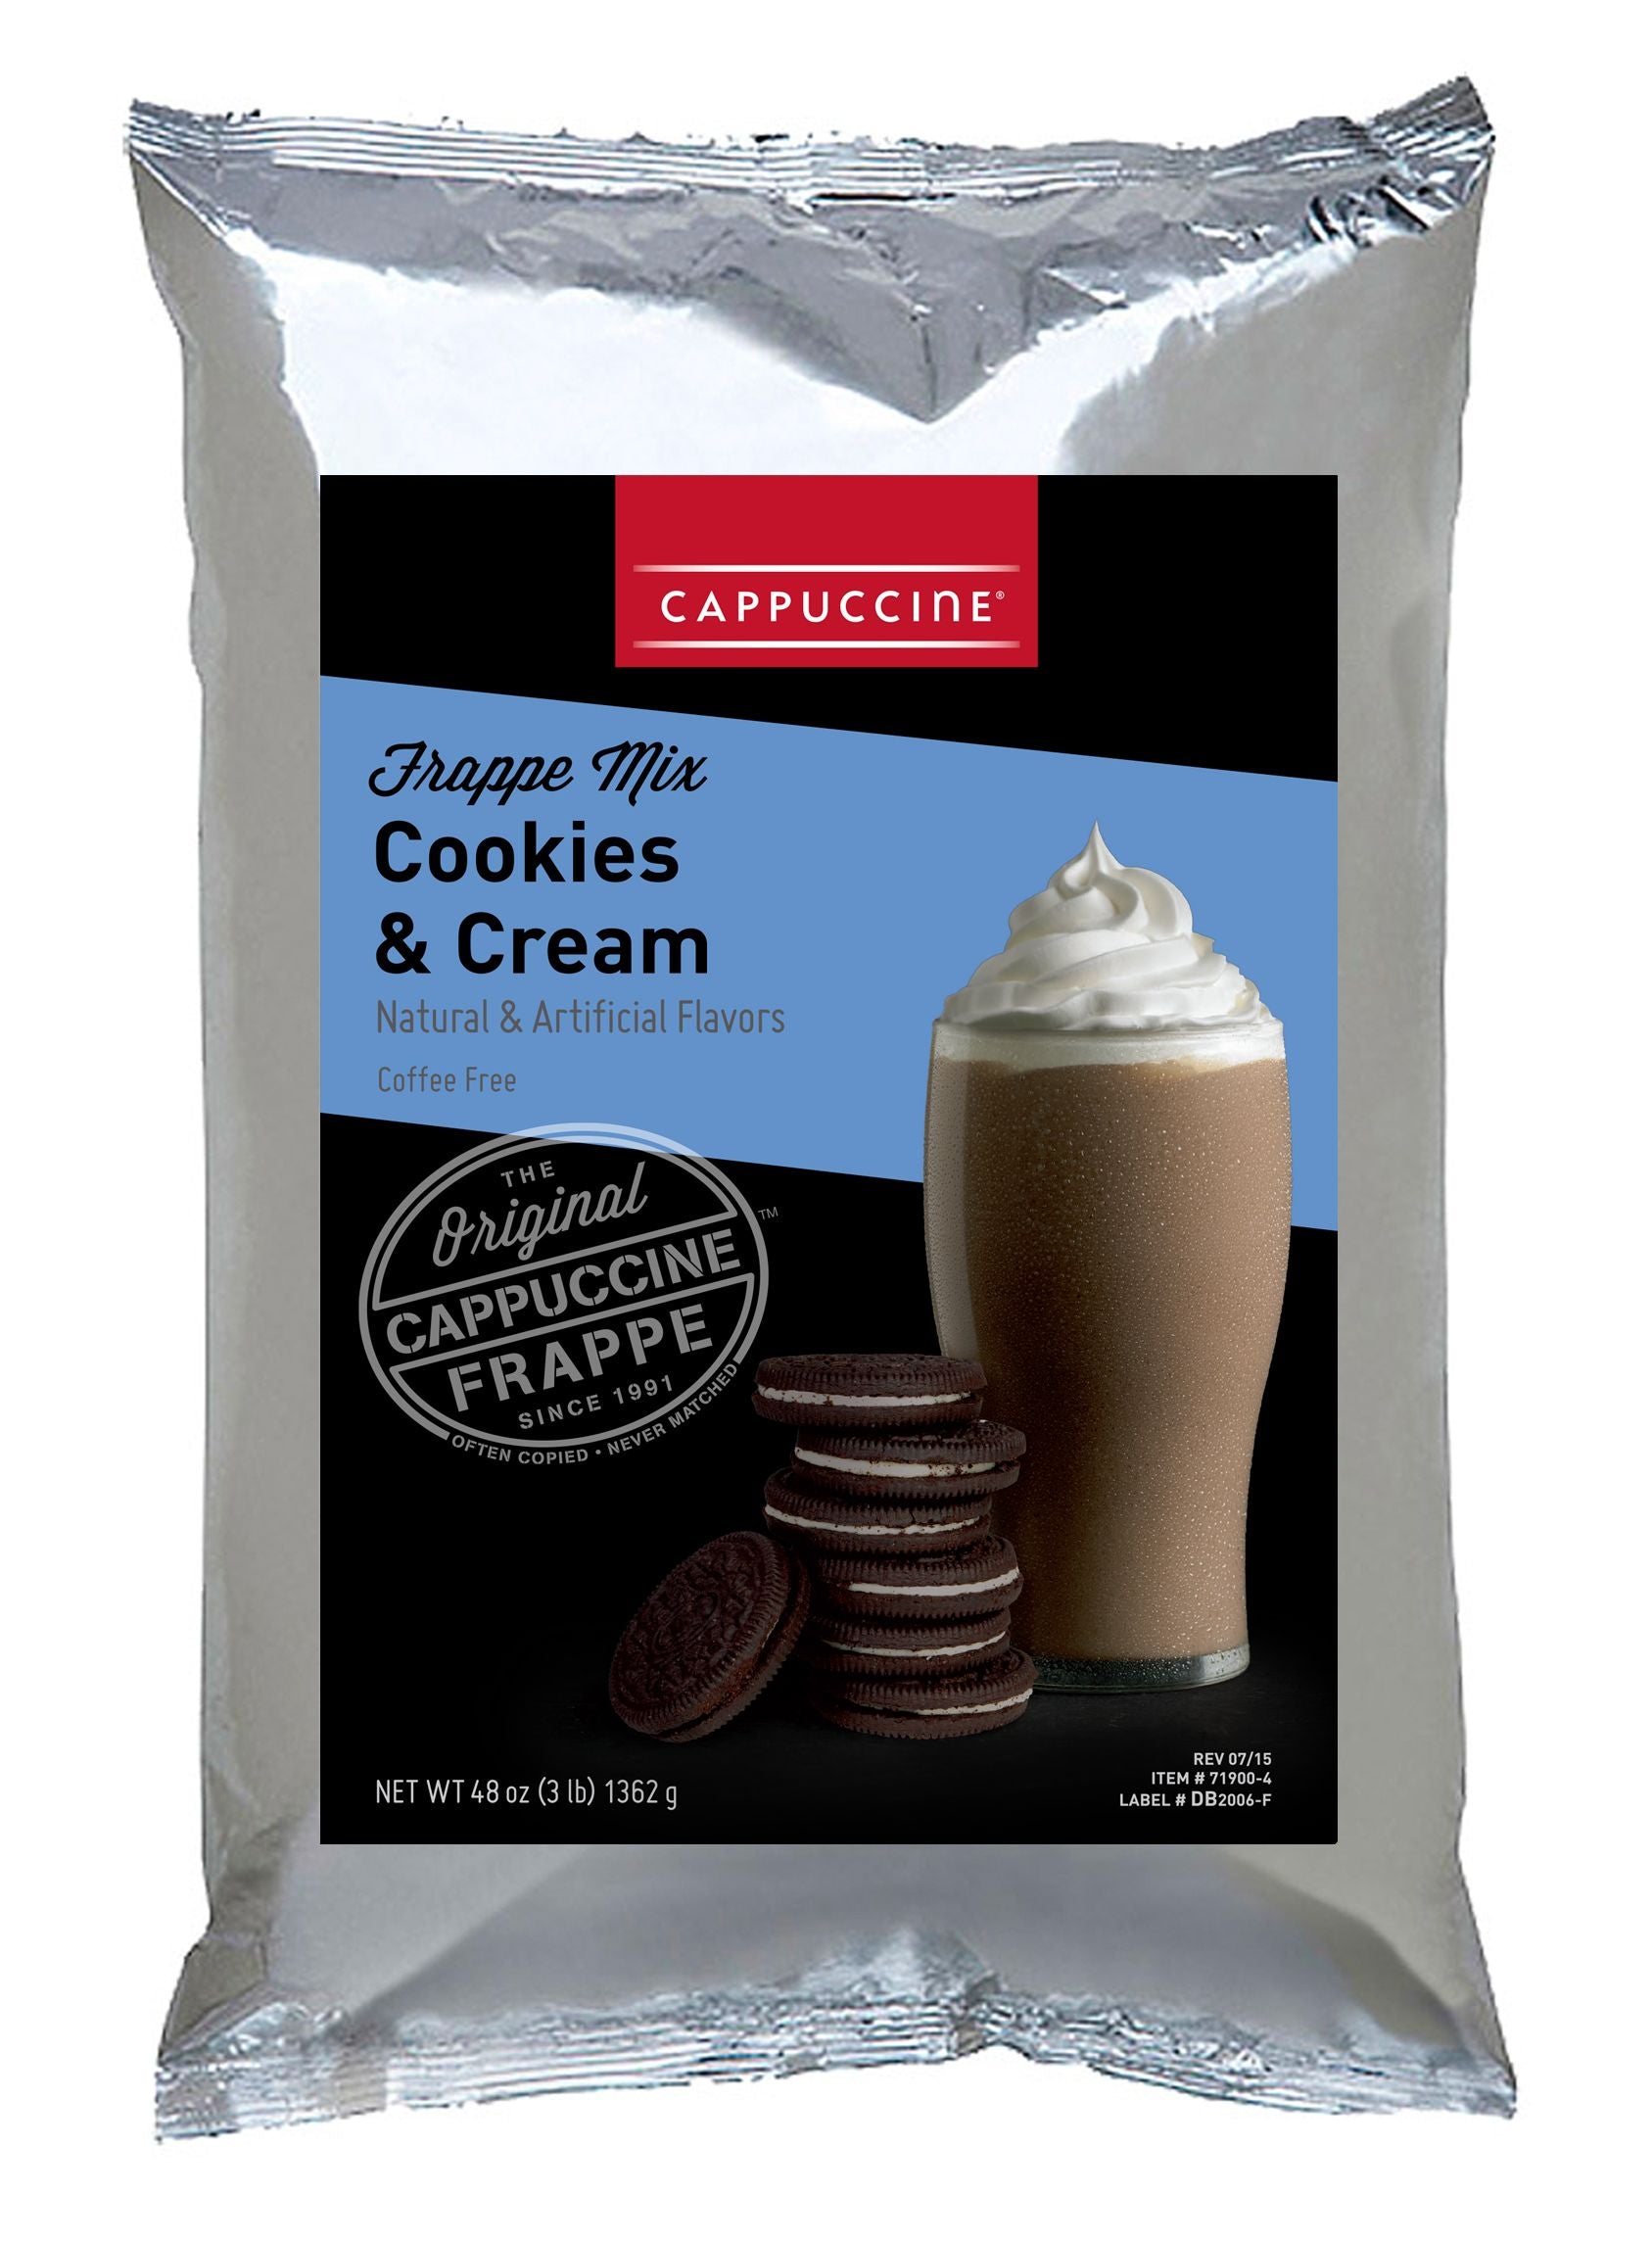 Cappuccine Frappe Mix - 3 lb. Bulk Bag: Cookies n Cream